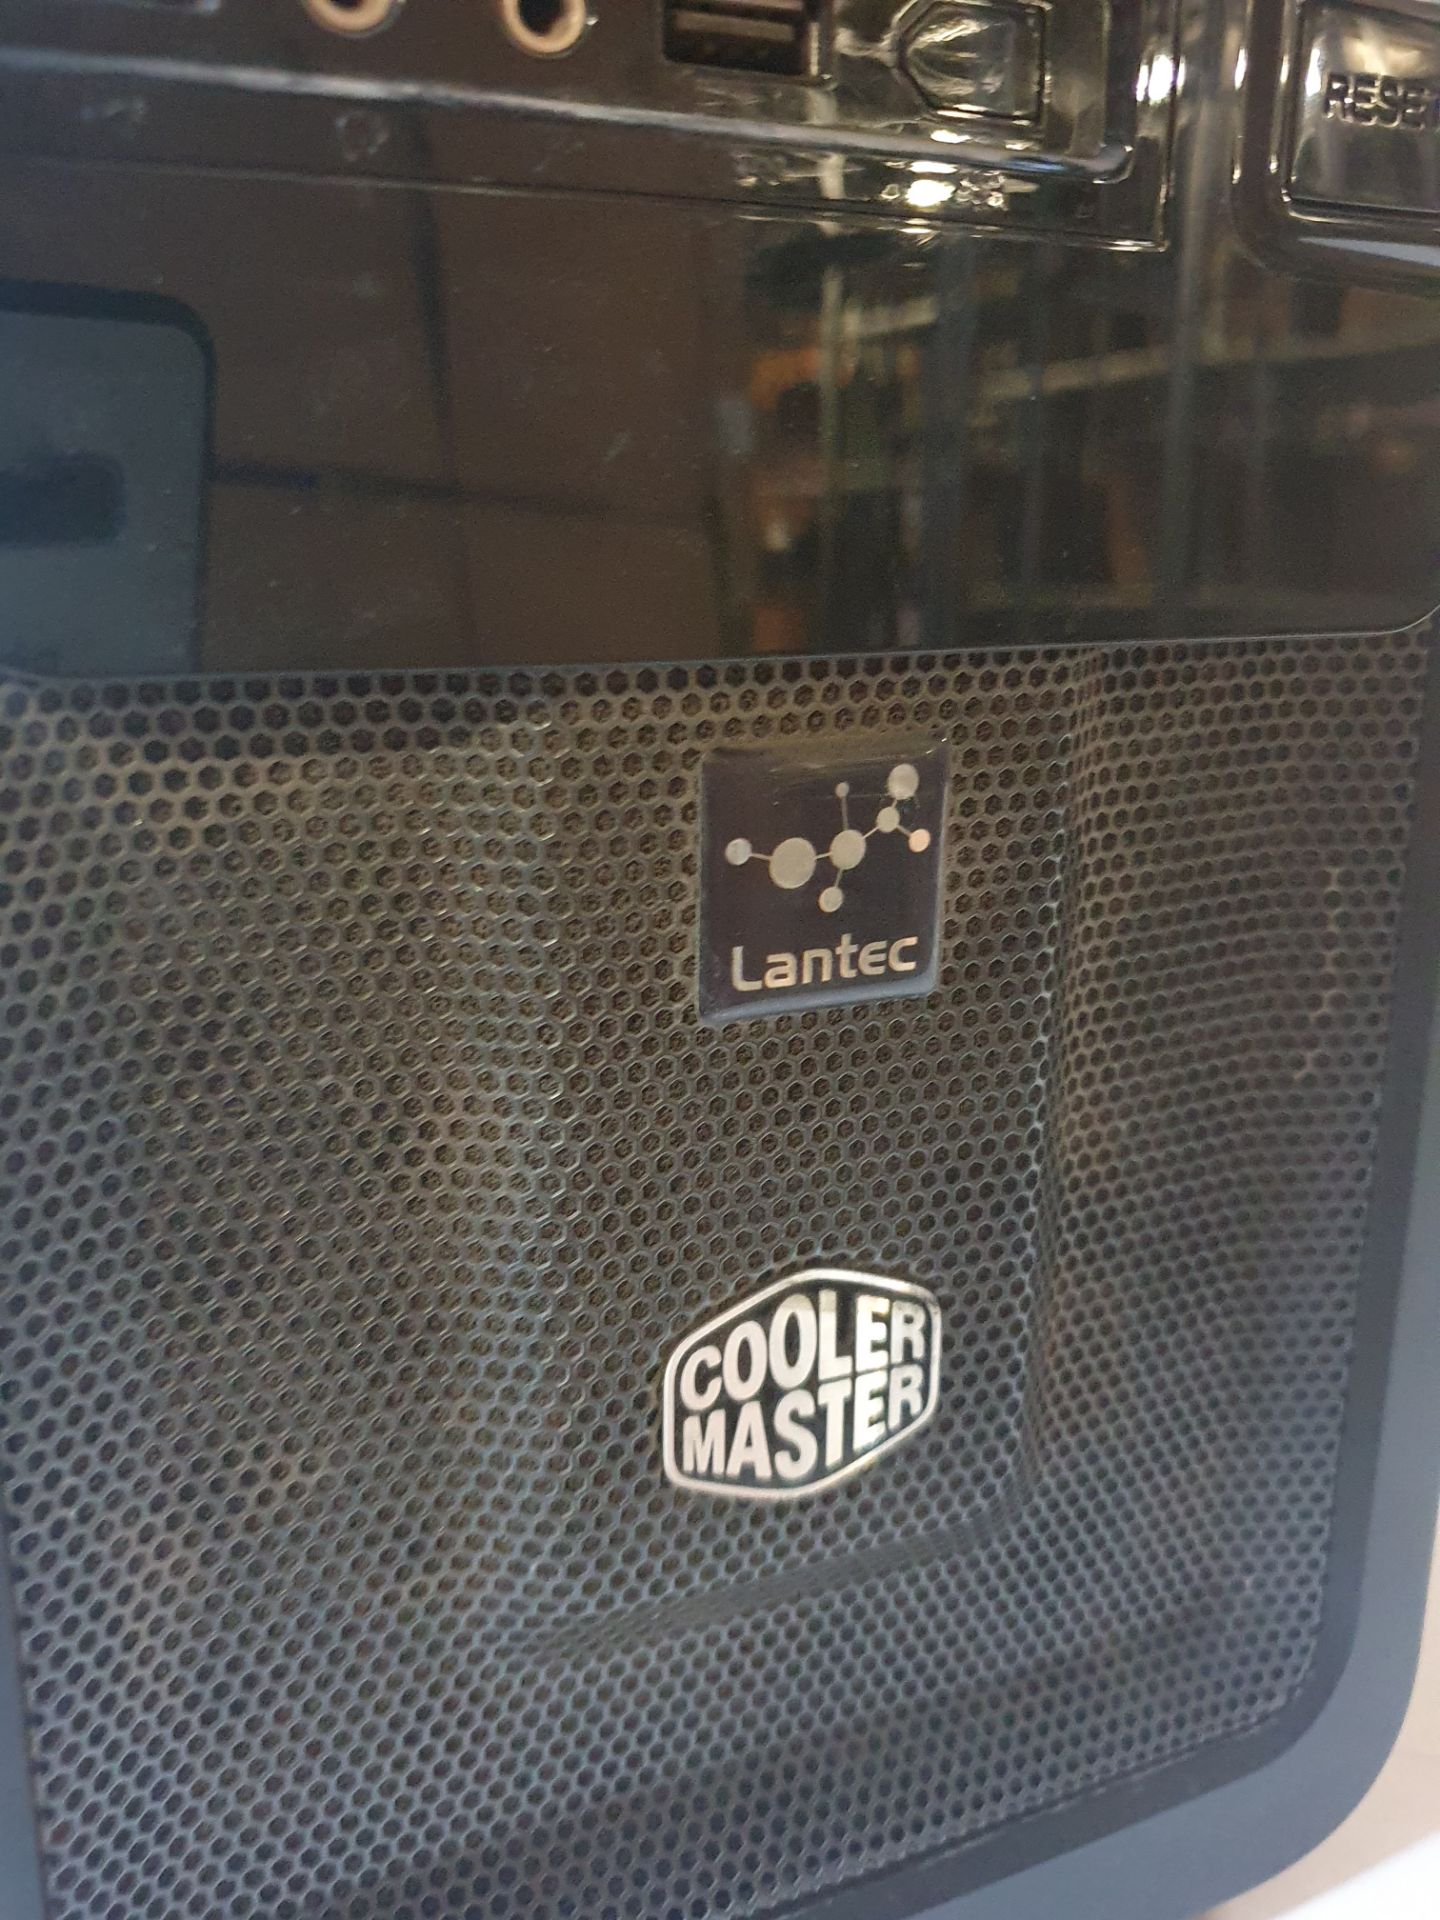 Cooler Master Desktop Computer. Model: Lantec - Image 3 of 3